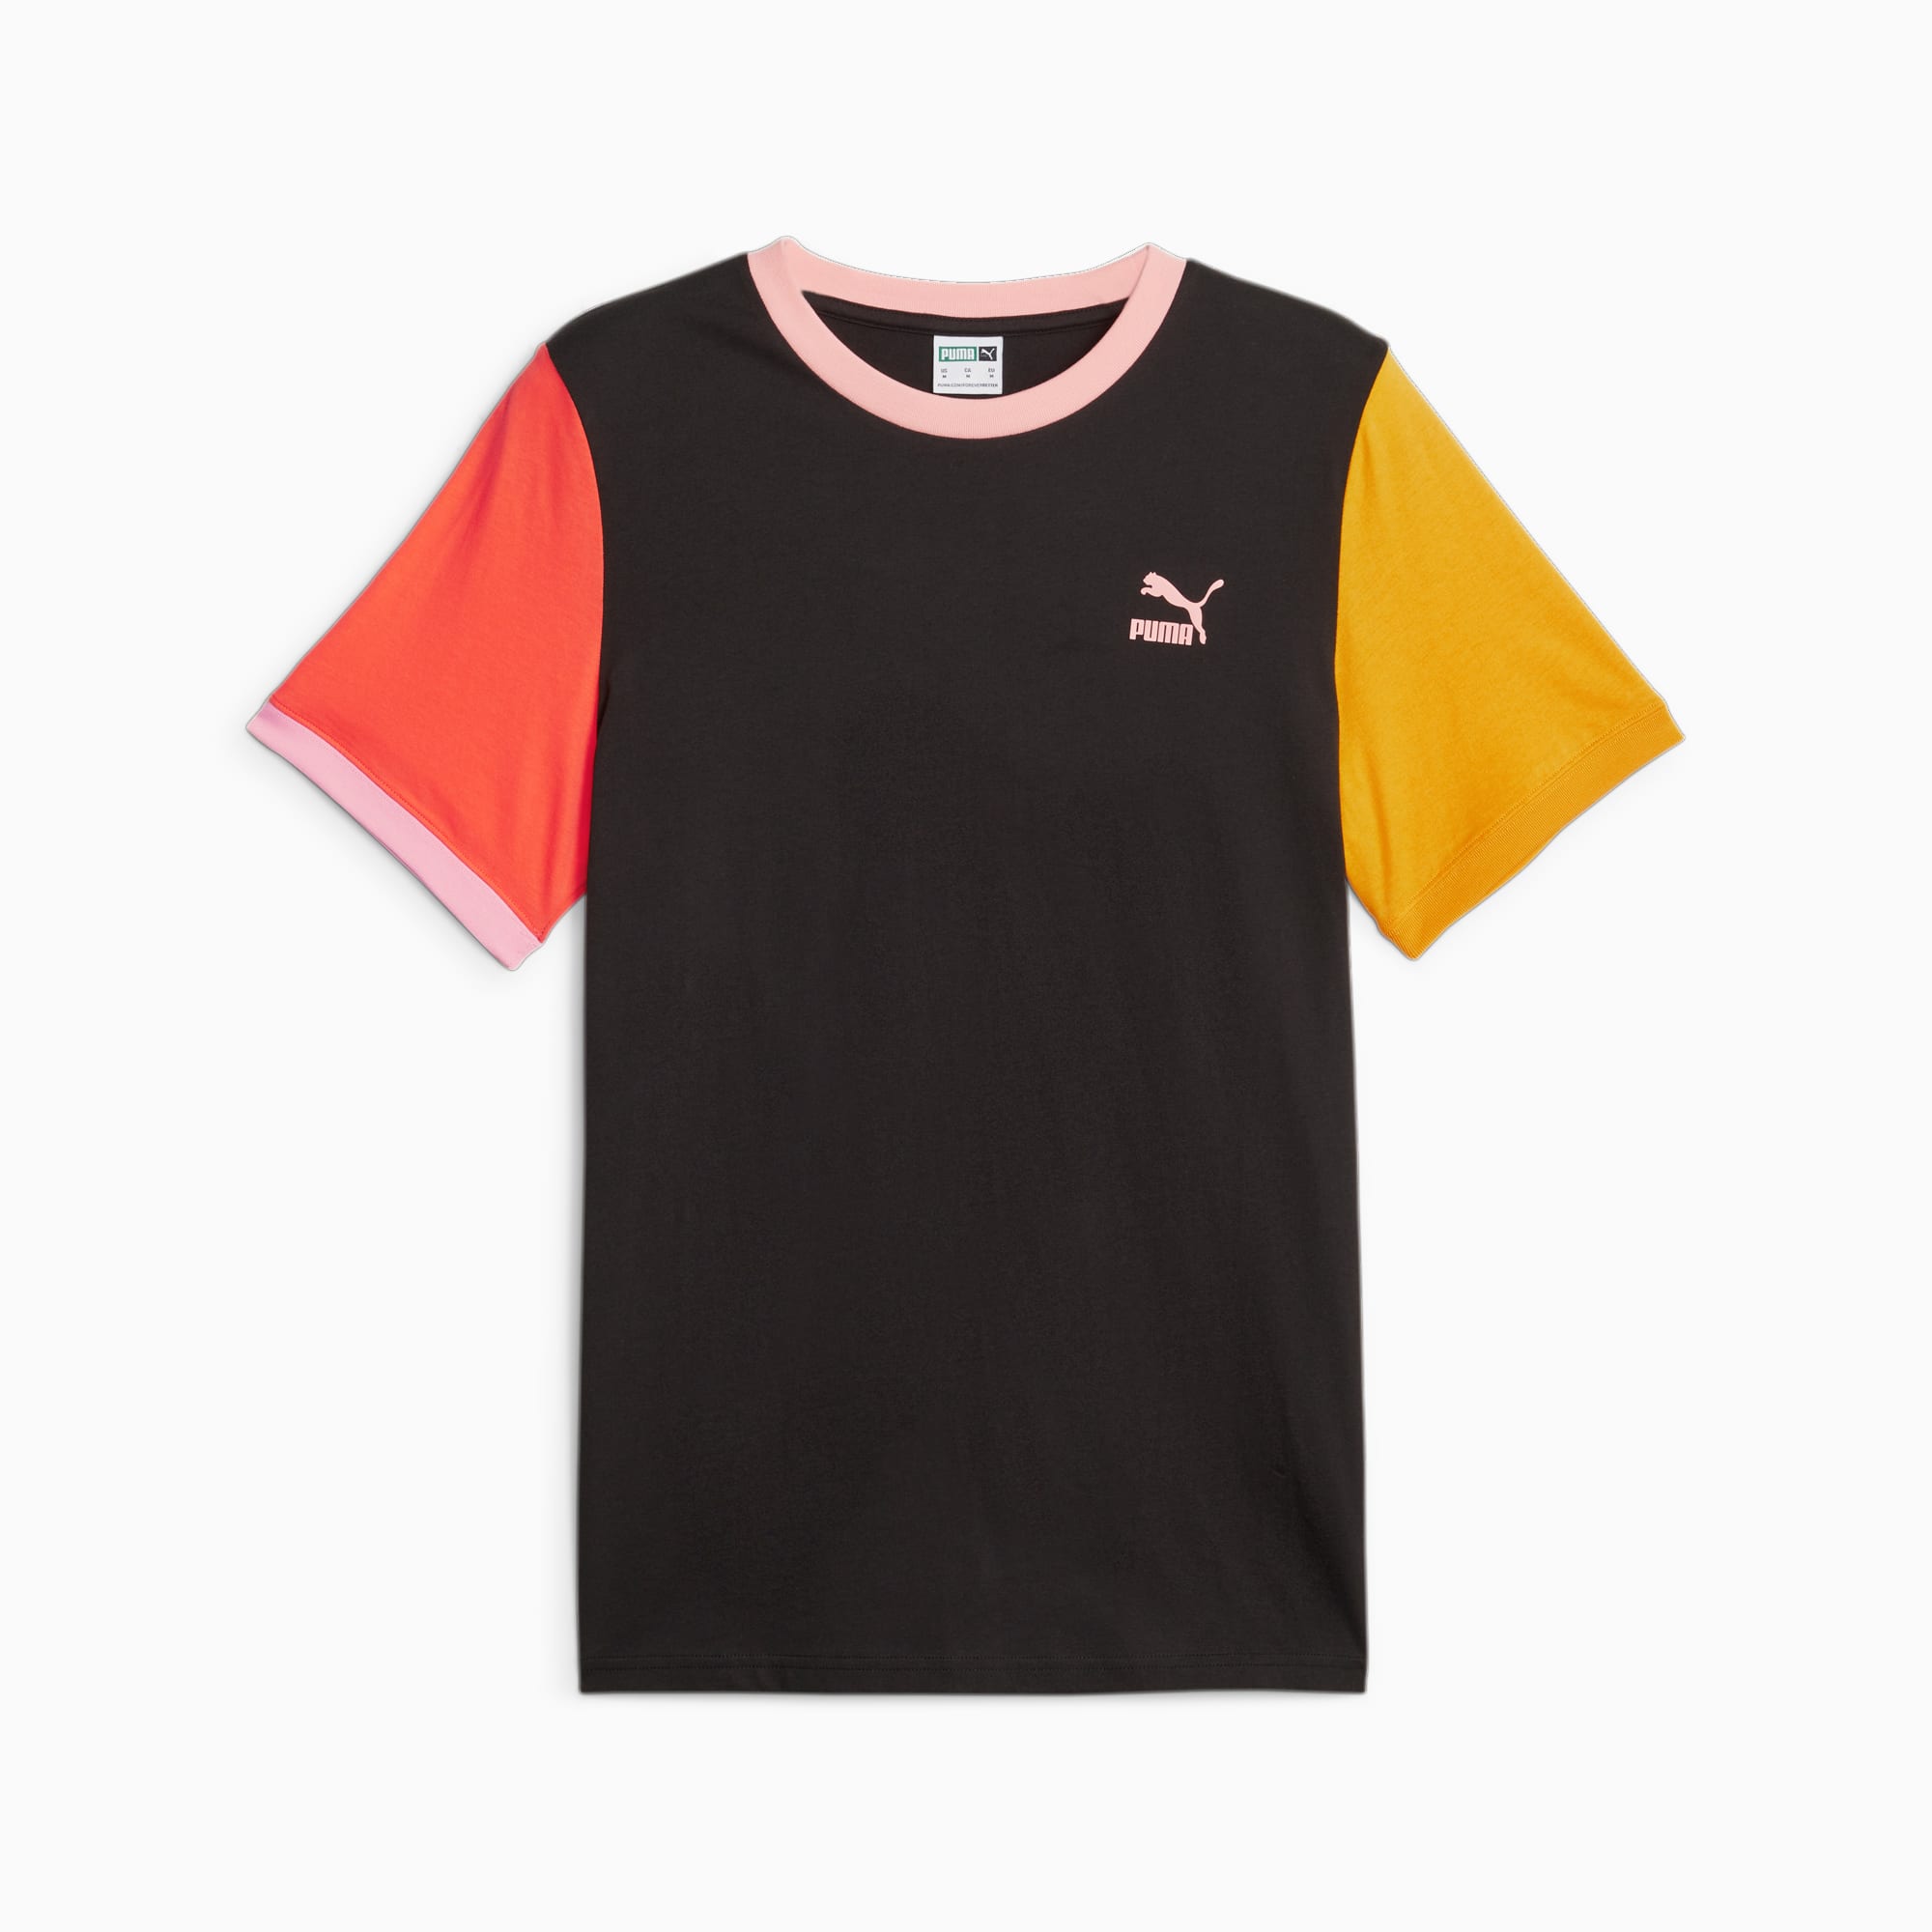 Classici Block T-Shirt Da Uomo, Arancione/Nero/Altro